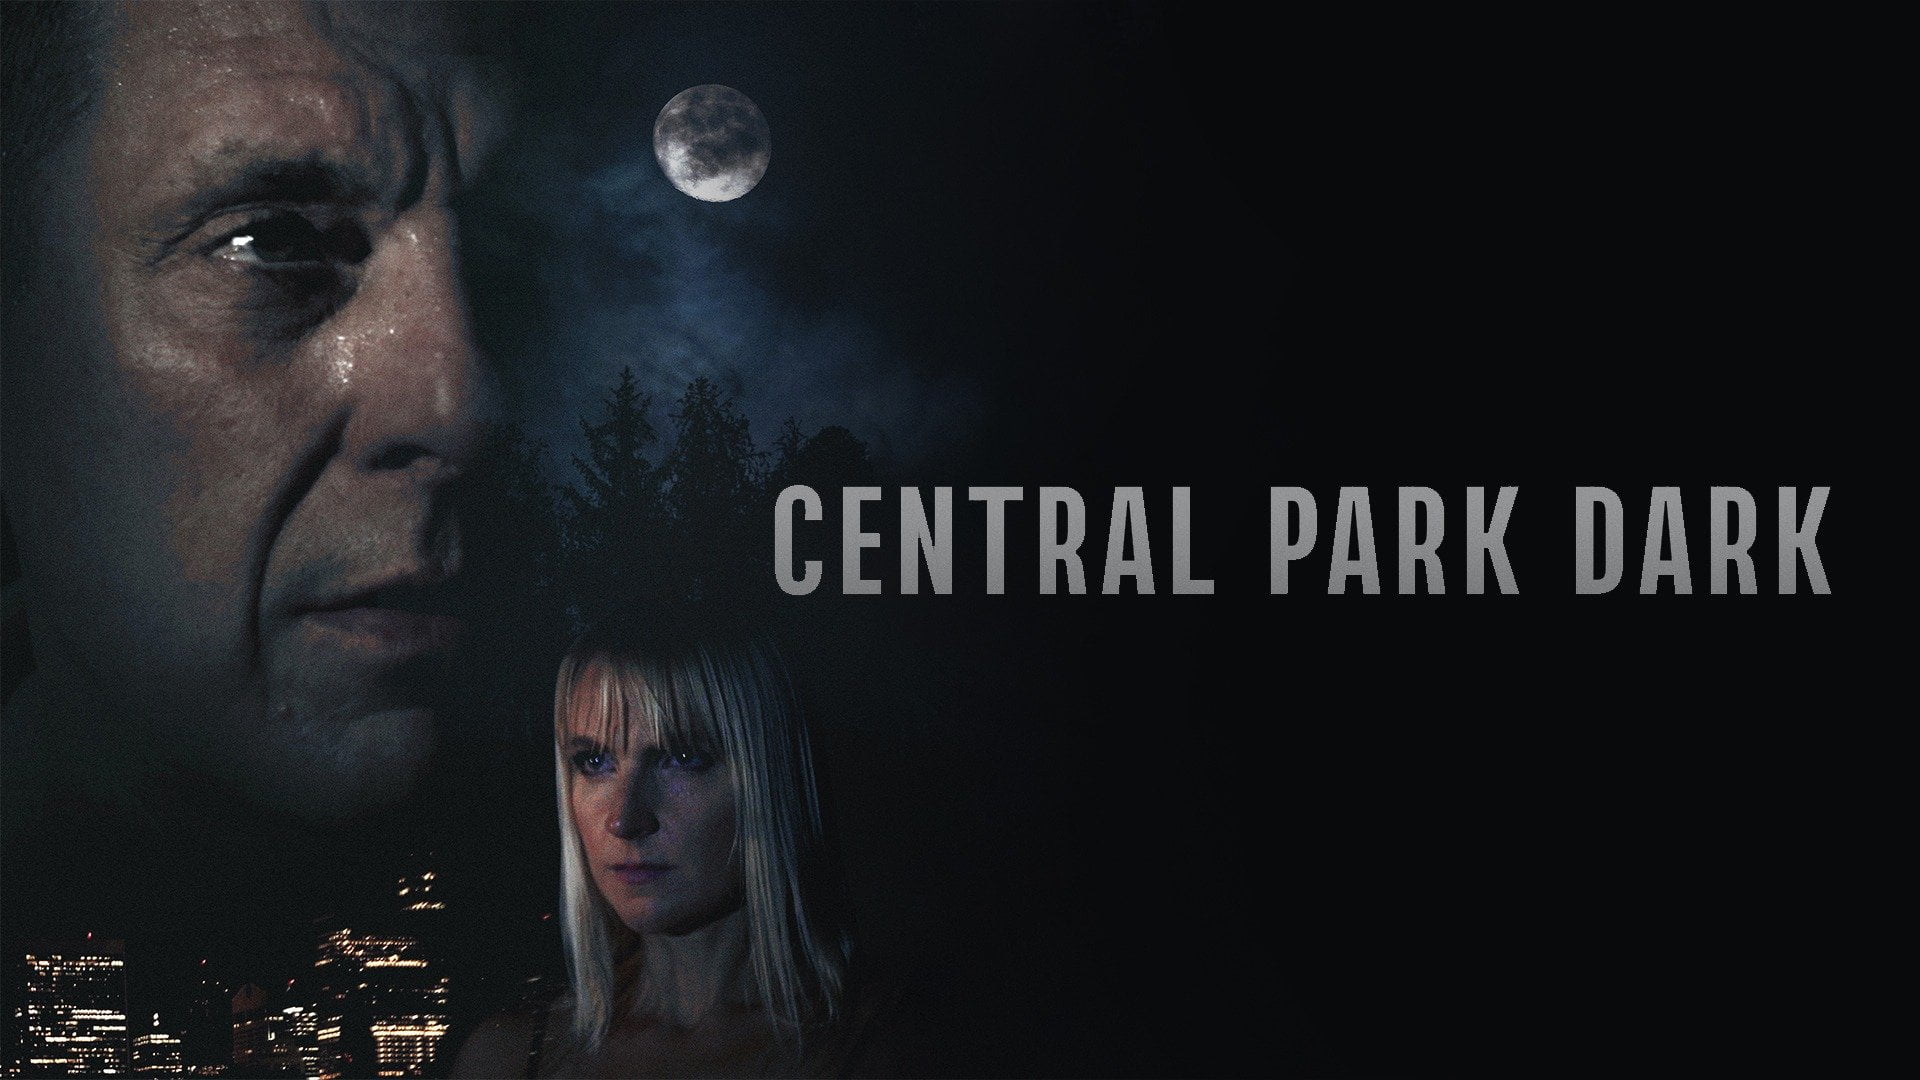 Centra Park Dark Review